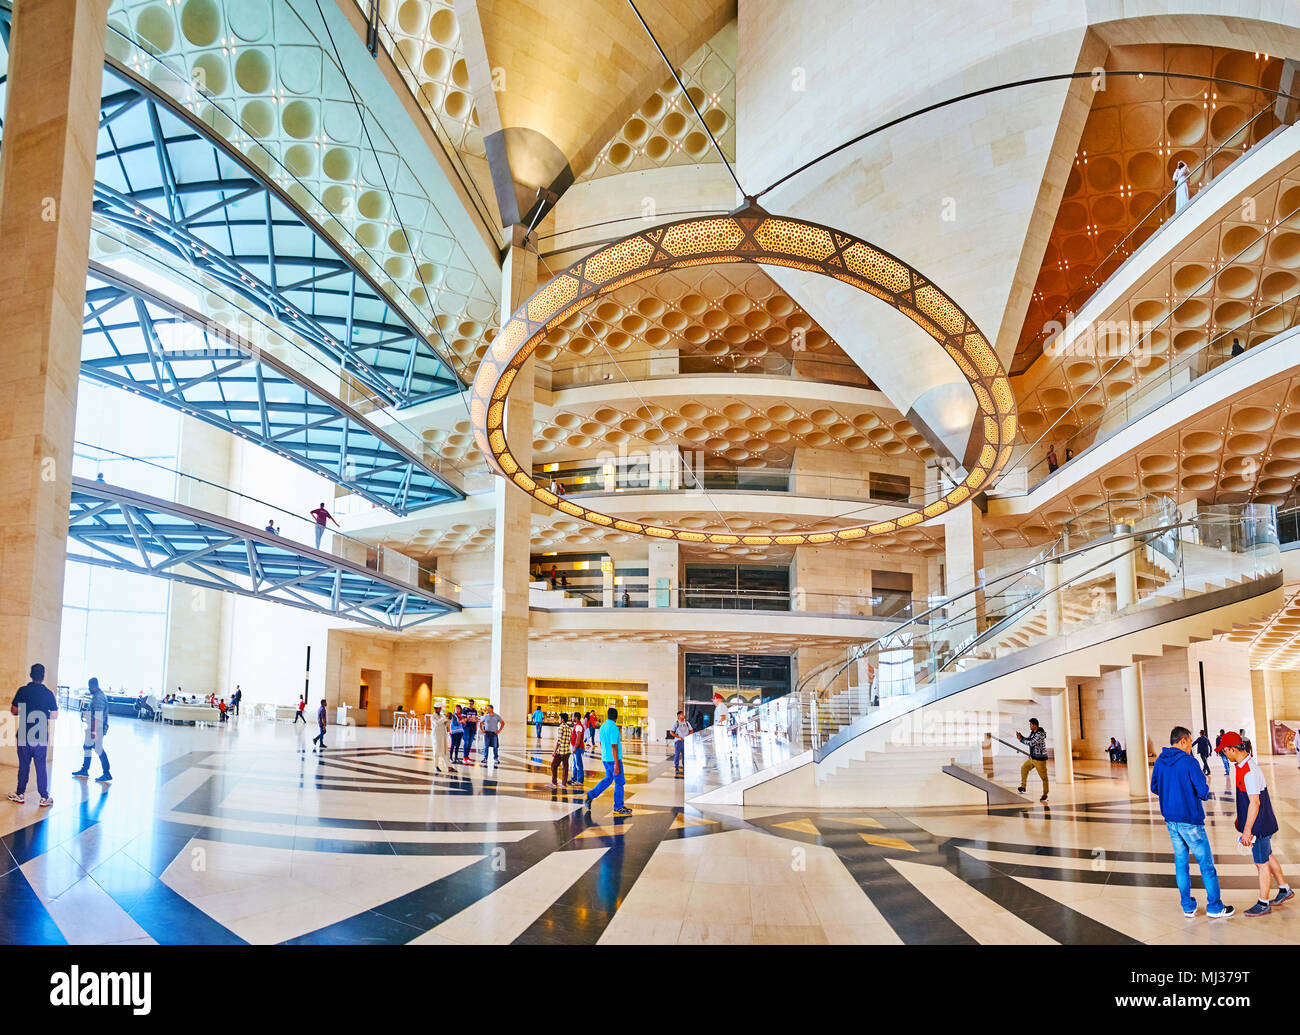 DOHA, QATAR - 13 février 2018 : Panorama de la salle de musée d'art islamique - l'exemple parfait de l'architecture moderne et le design intérieur au Qatar, sur Banque D'Images